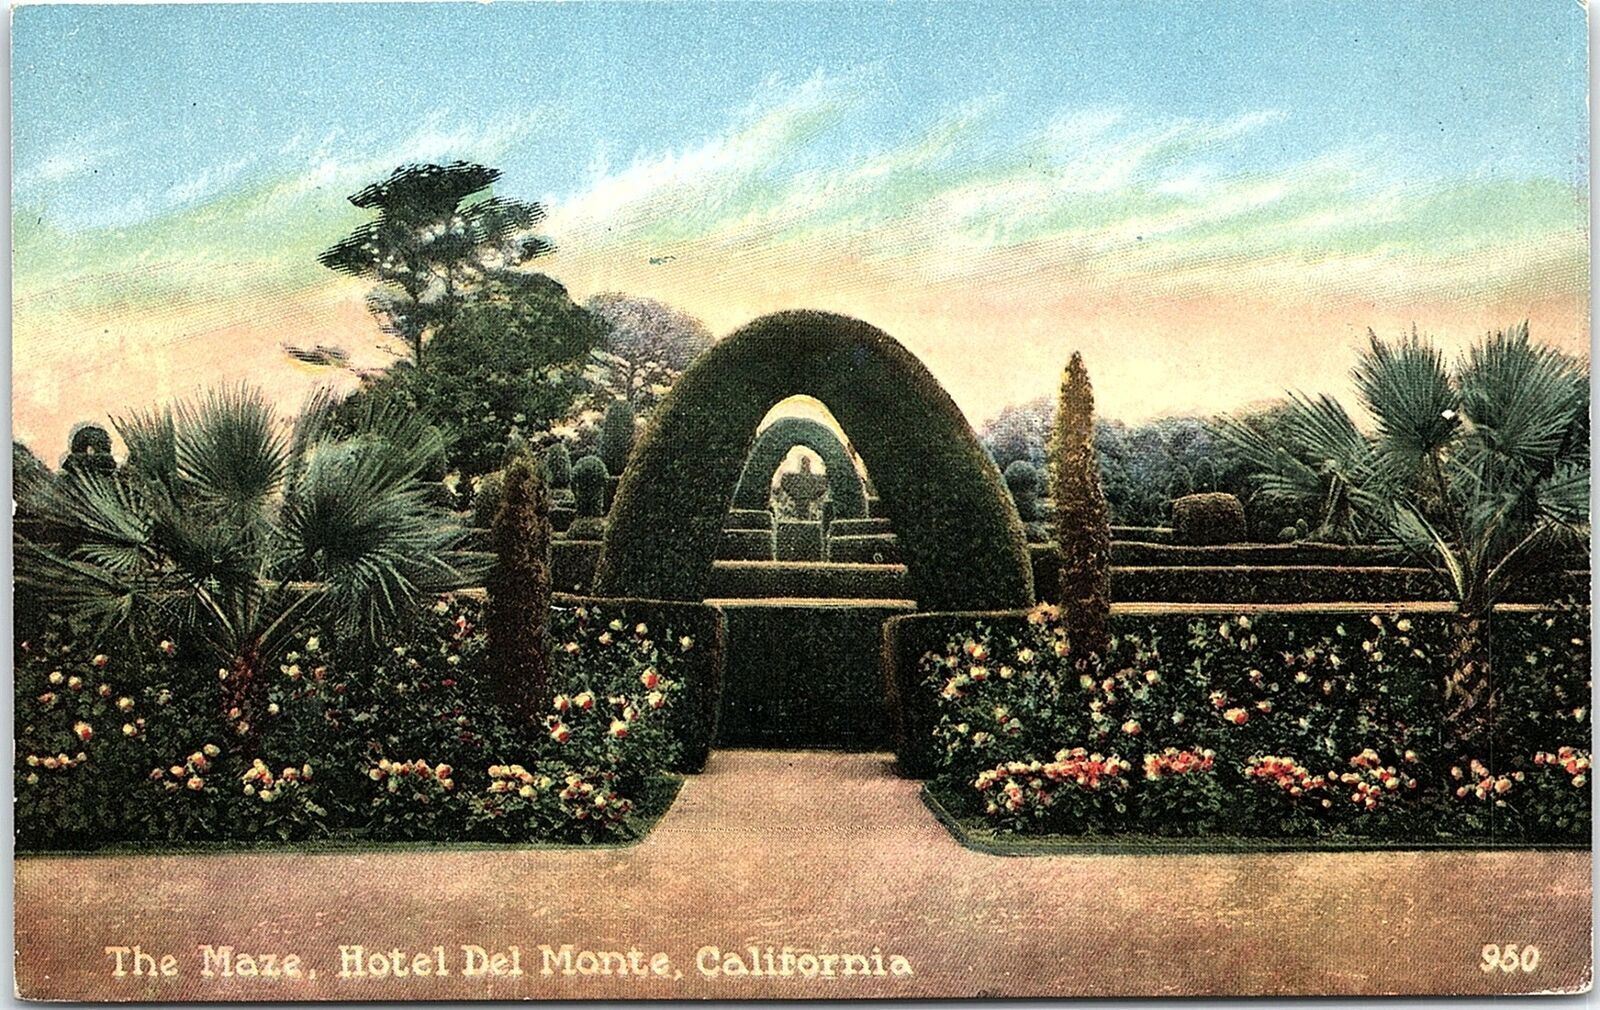 c1910 HOTEL DEL MONTE CALIFORNIA THE MAZE FLORAL GARDENS POSTCARD 41-294